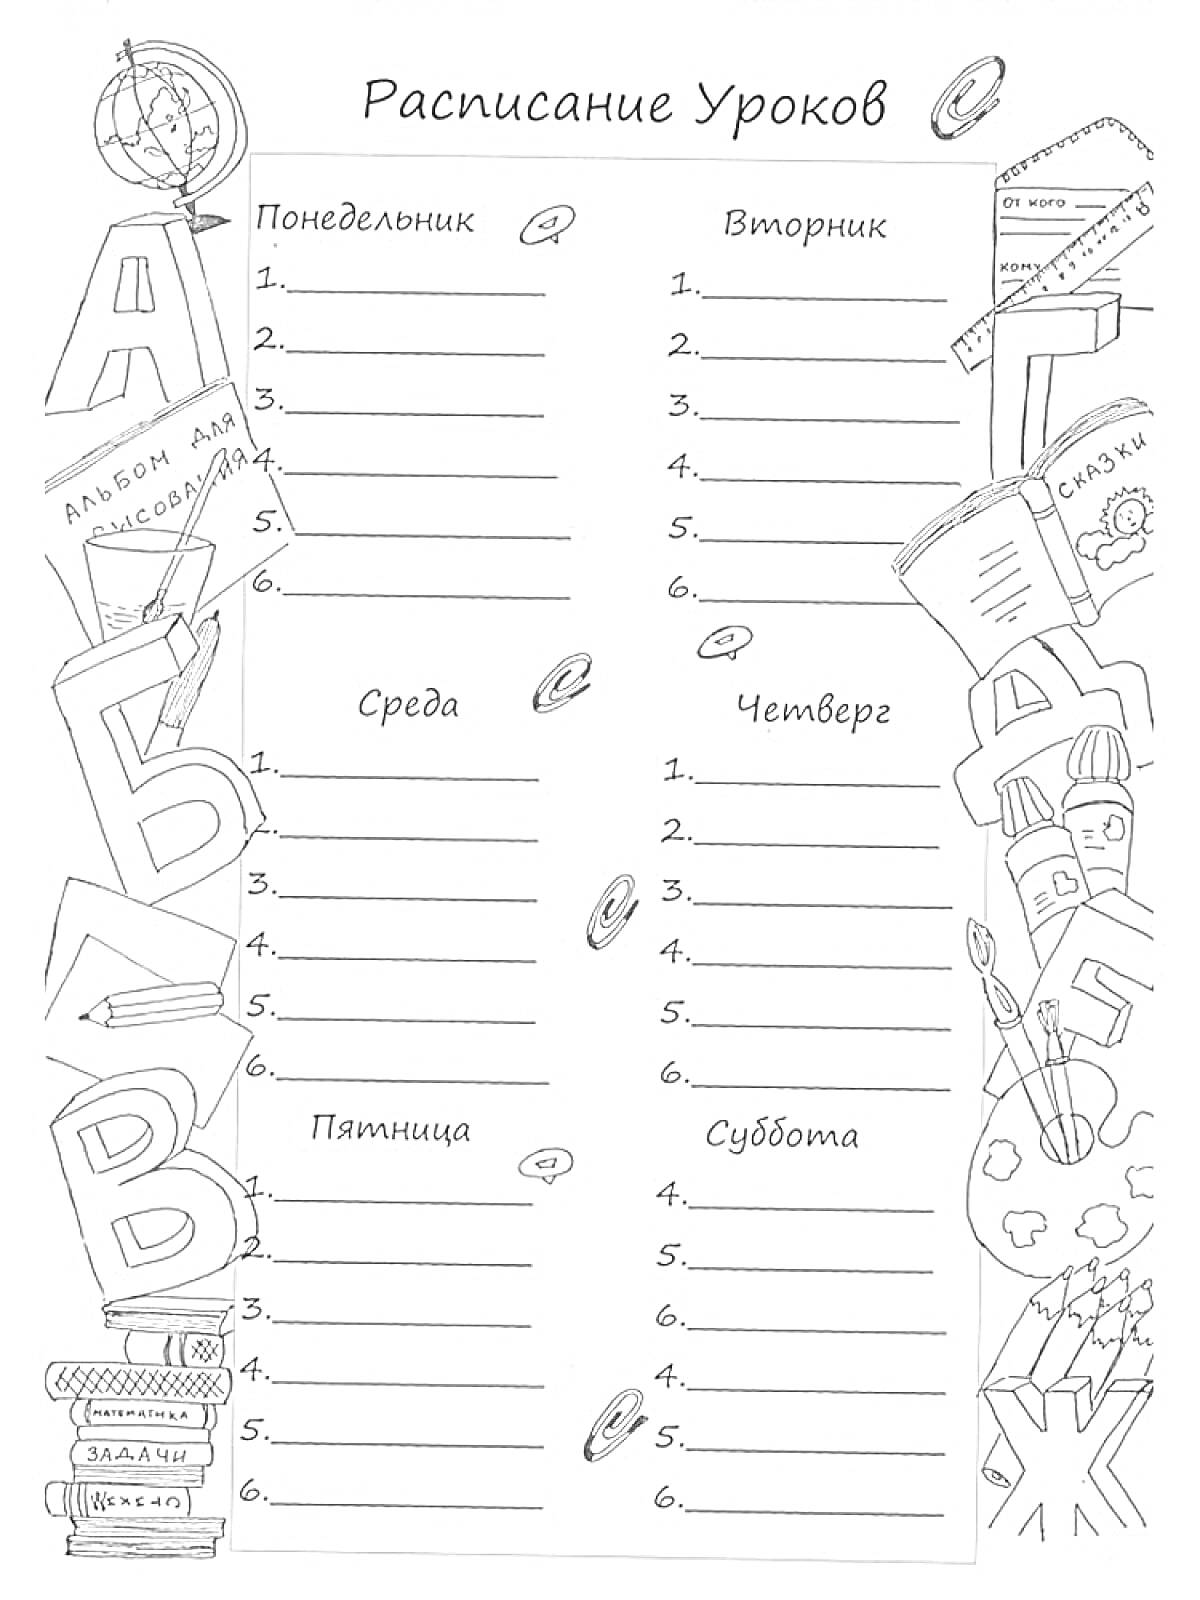 Расписание уроков с книгами, глобусом, карандашами, буквами и другими школьными принадлежностями